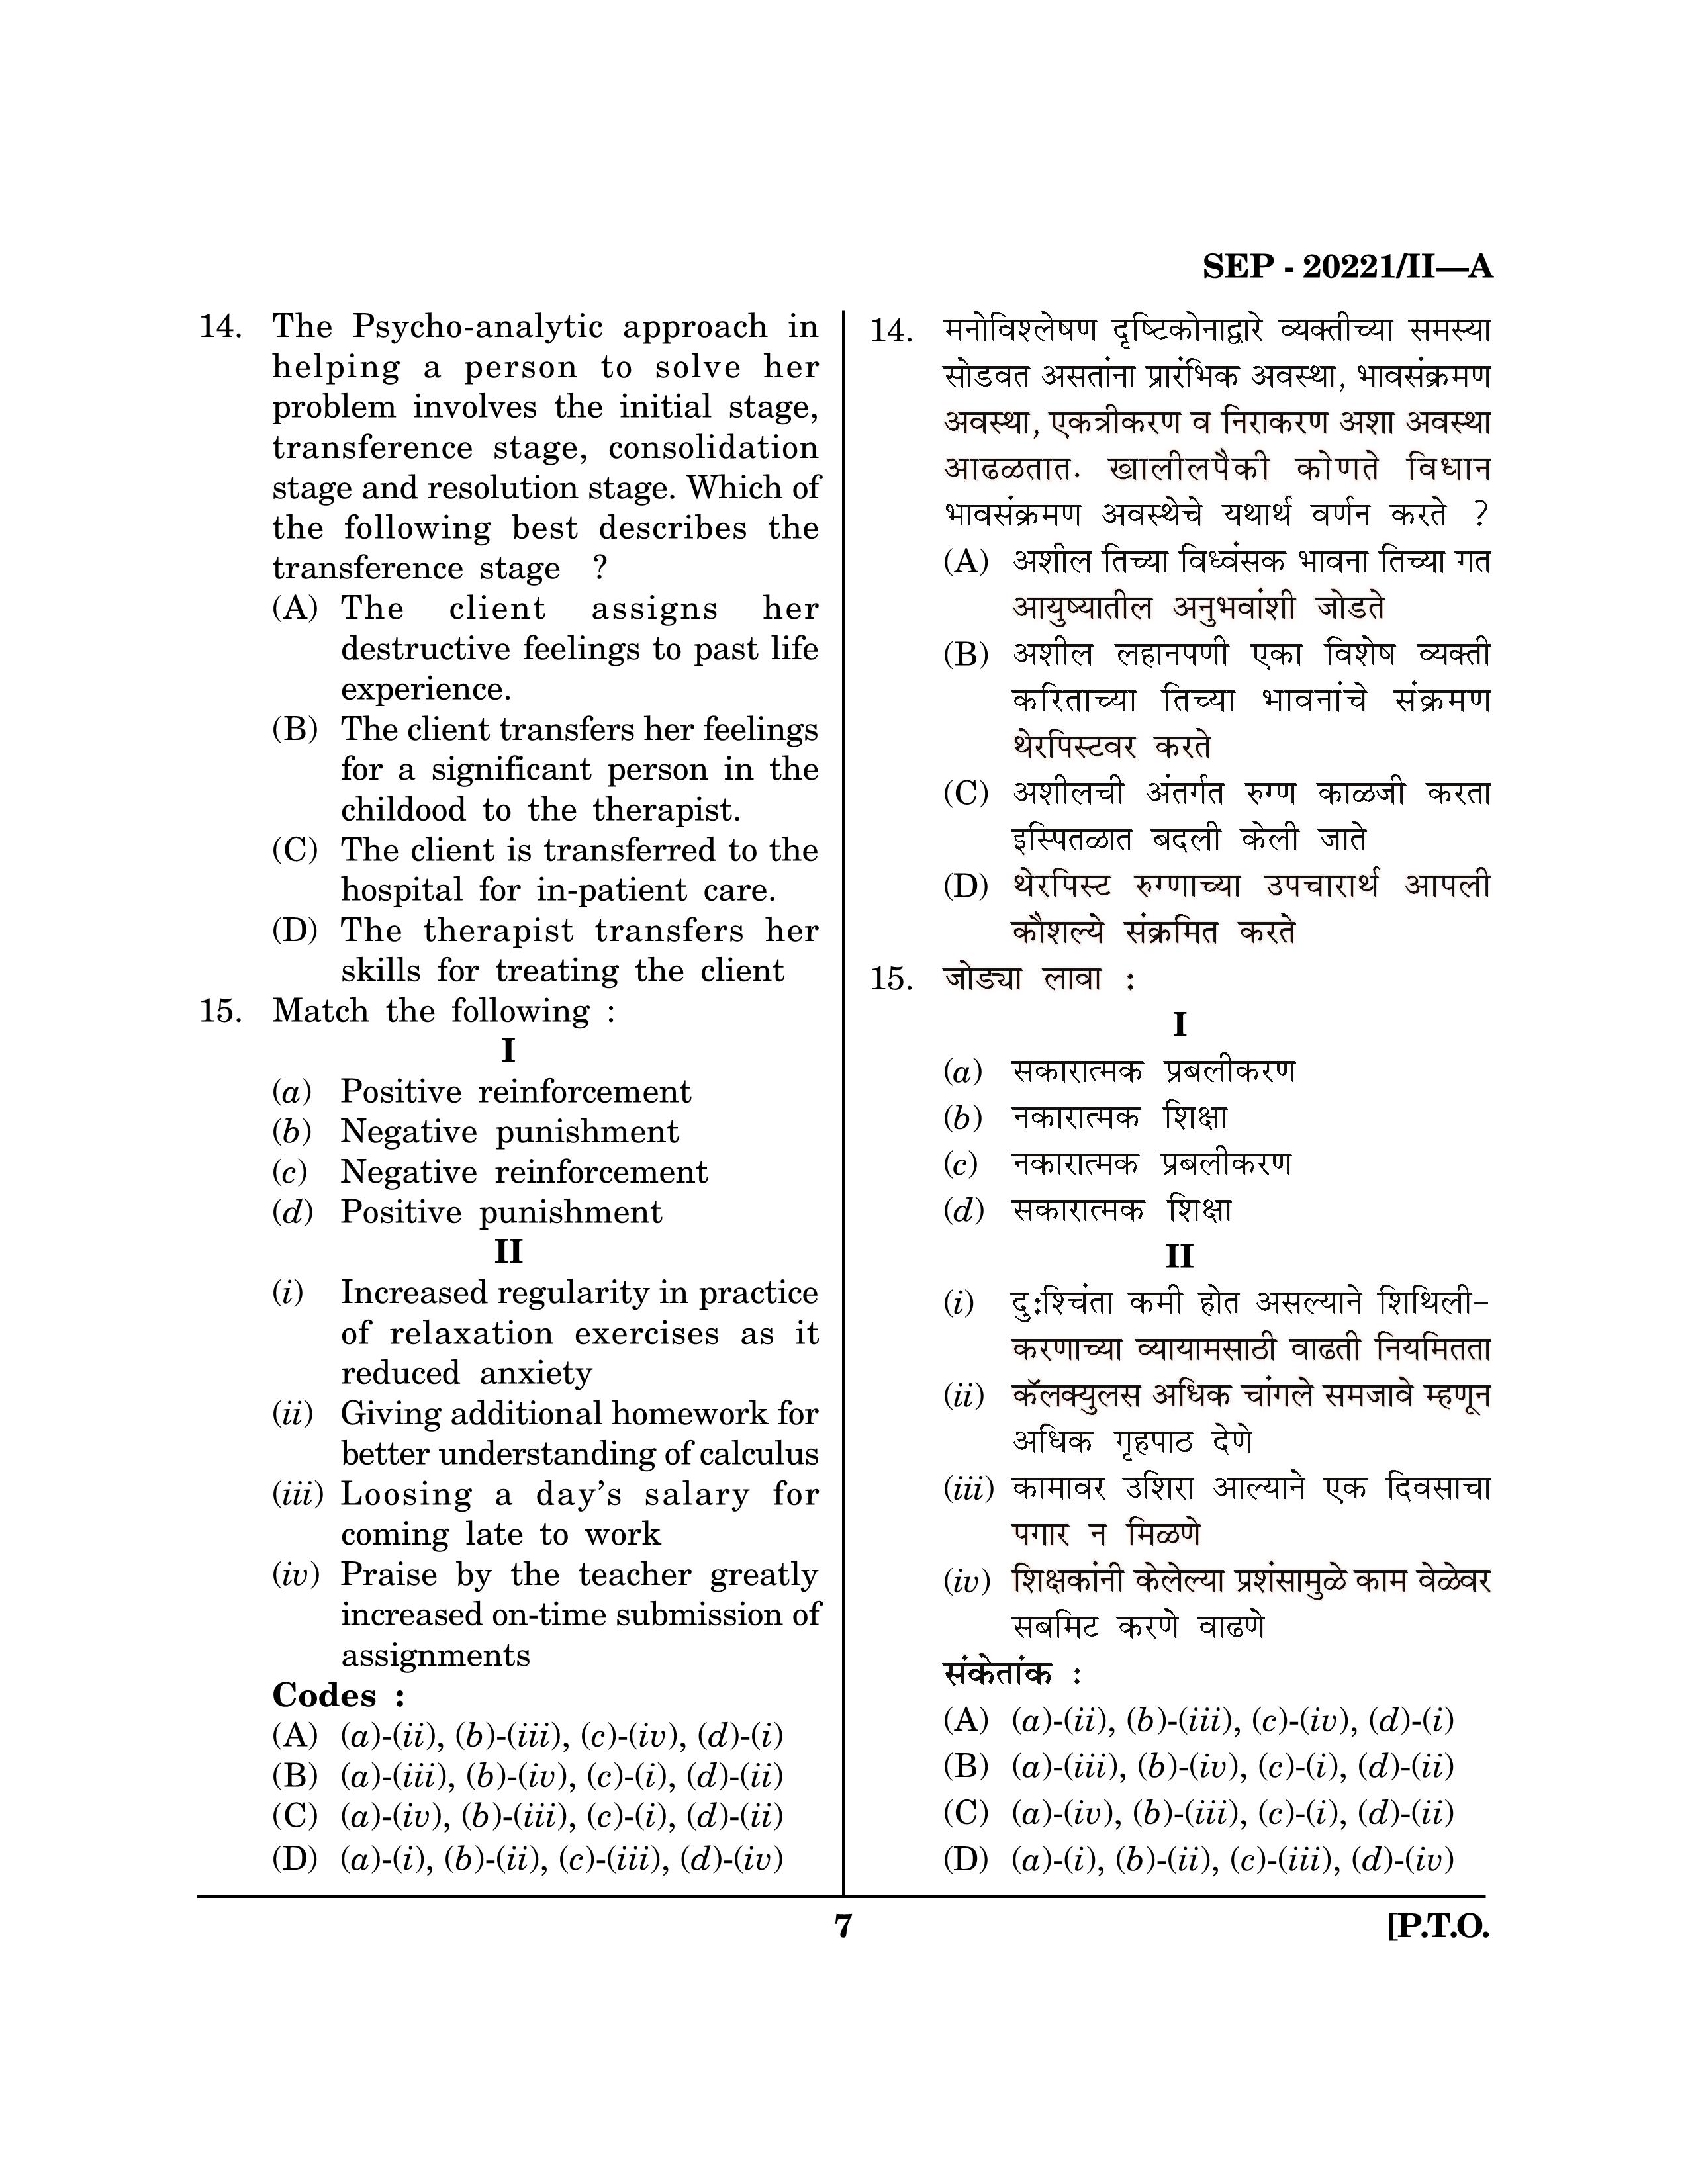 Maharashtra SET Social Work Exam Question Paper September 2021 6